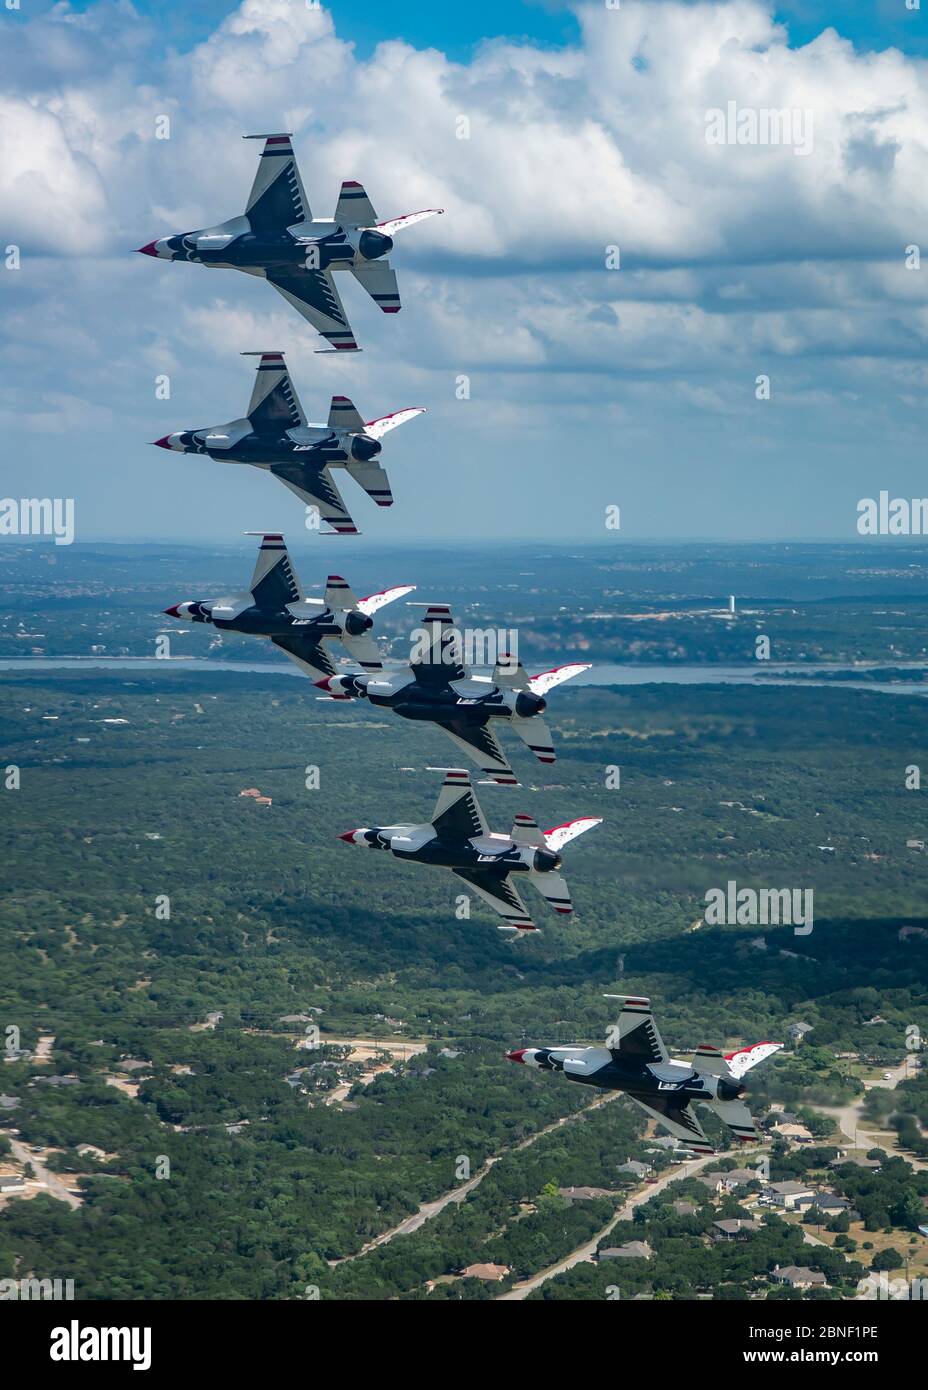 Le 13 mai 2020, le « Thunderbirds », Escadron de démonstration aérienne de la Force aérienne des États-Unis, survole Austin, Texas. Le survol a été une partie de l'Amérique fort; un salut collaboratif de l'Armée de l'Air et de la Marine pour reconnaître les travailleurs de la santé, les premiers intervenants, les militaires et d'autres personnels essentiels tout en restant en solidarité avec tous les Américains pendant la pandémie COVID-19. (ÉTATS-UNIS Photo de la Force aérienne/Sgt. Cory avec bague) Banque D'Images